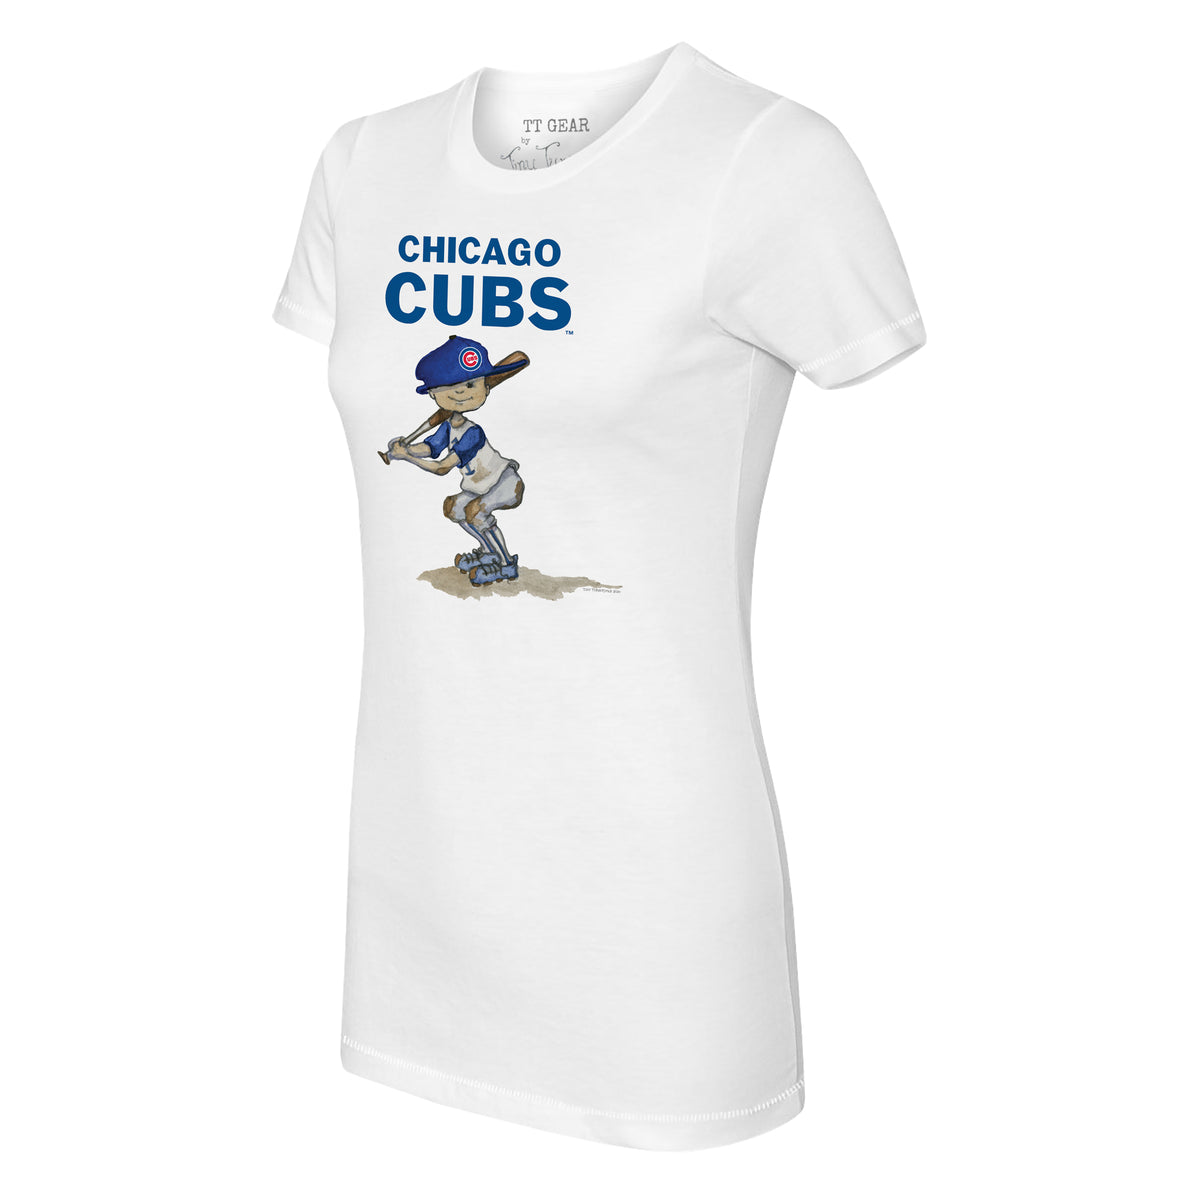 Chicago Cubs Tiny Turnip Youth Gumball Machine T-Shirt - White